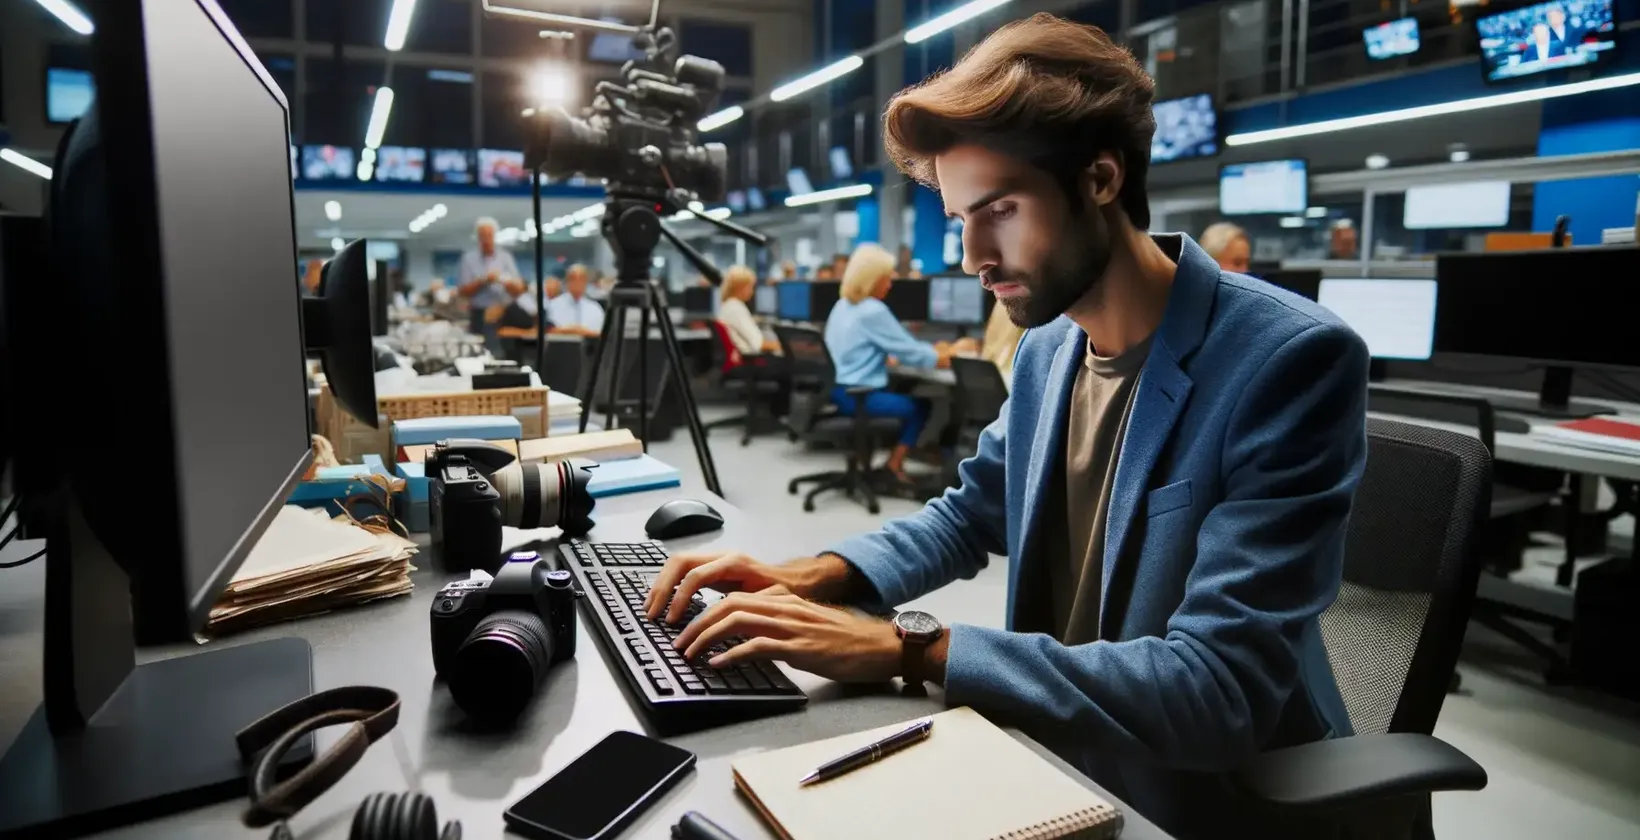 Novinár v rušnej redakcii s použitím prepisovacieho softvéru na svojom počítači.
